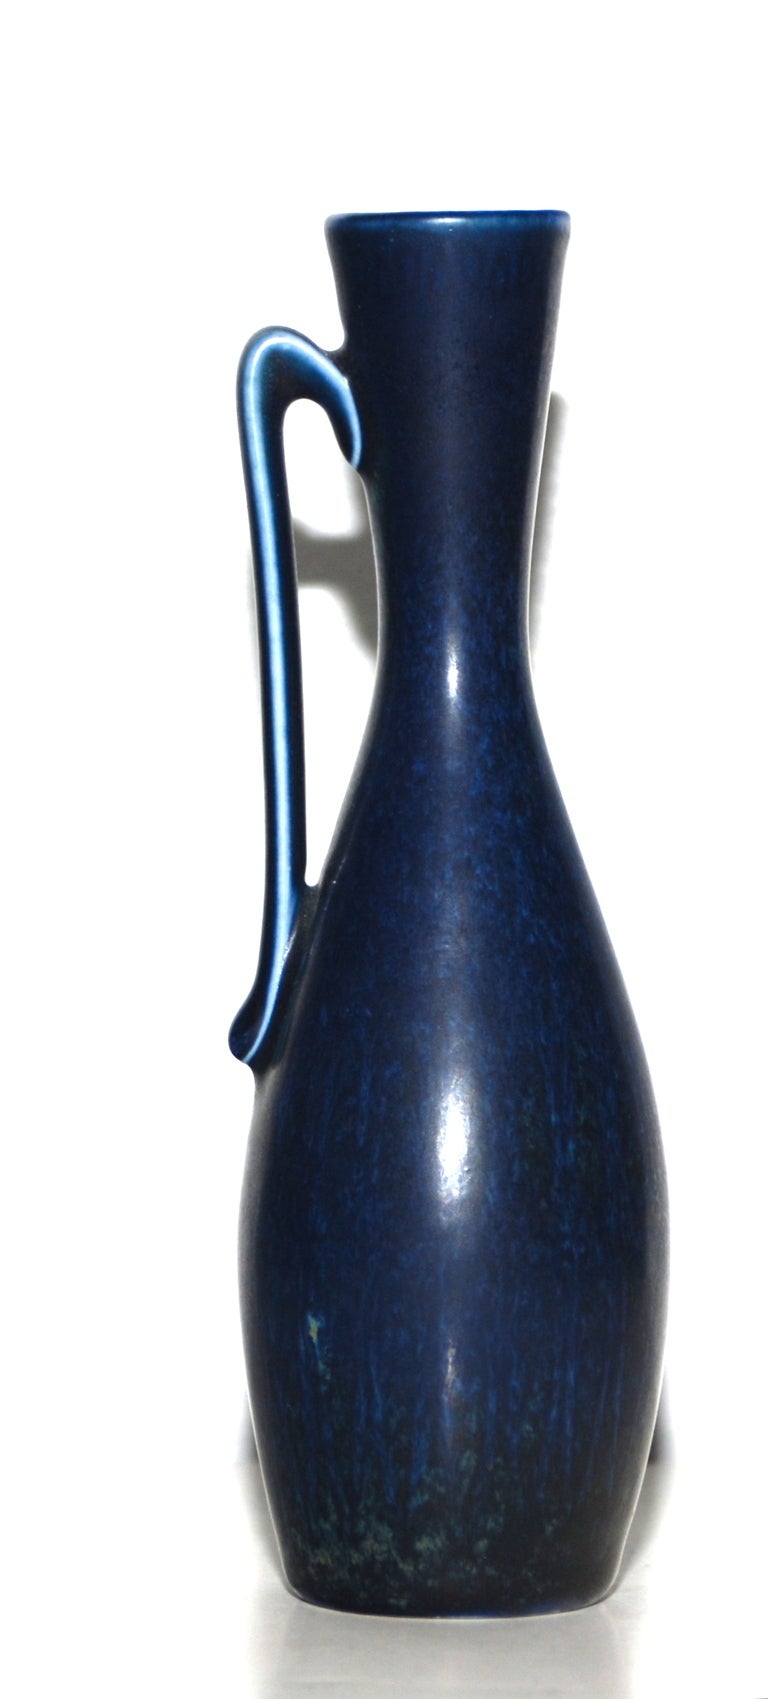 Stoneware vase by Gunnar Nylund for Rostrand, Sweden.
Signed: GN Sweden NSZ